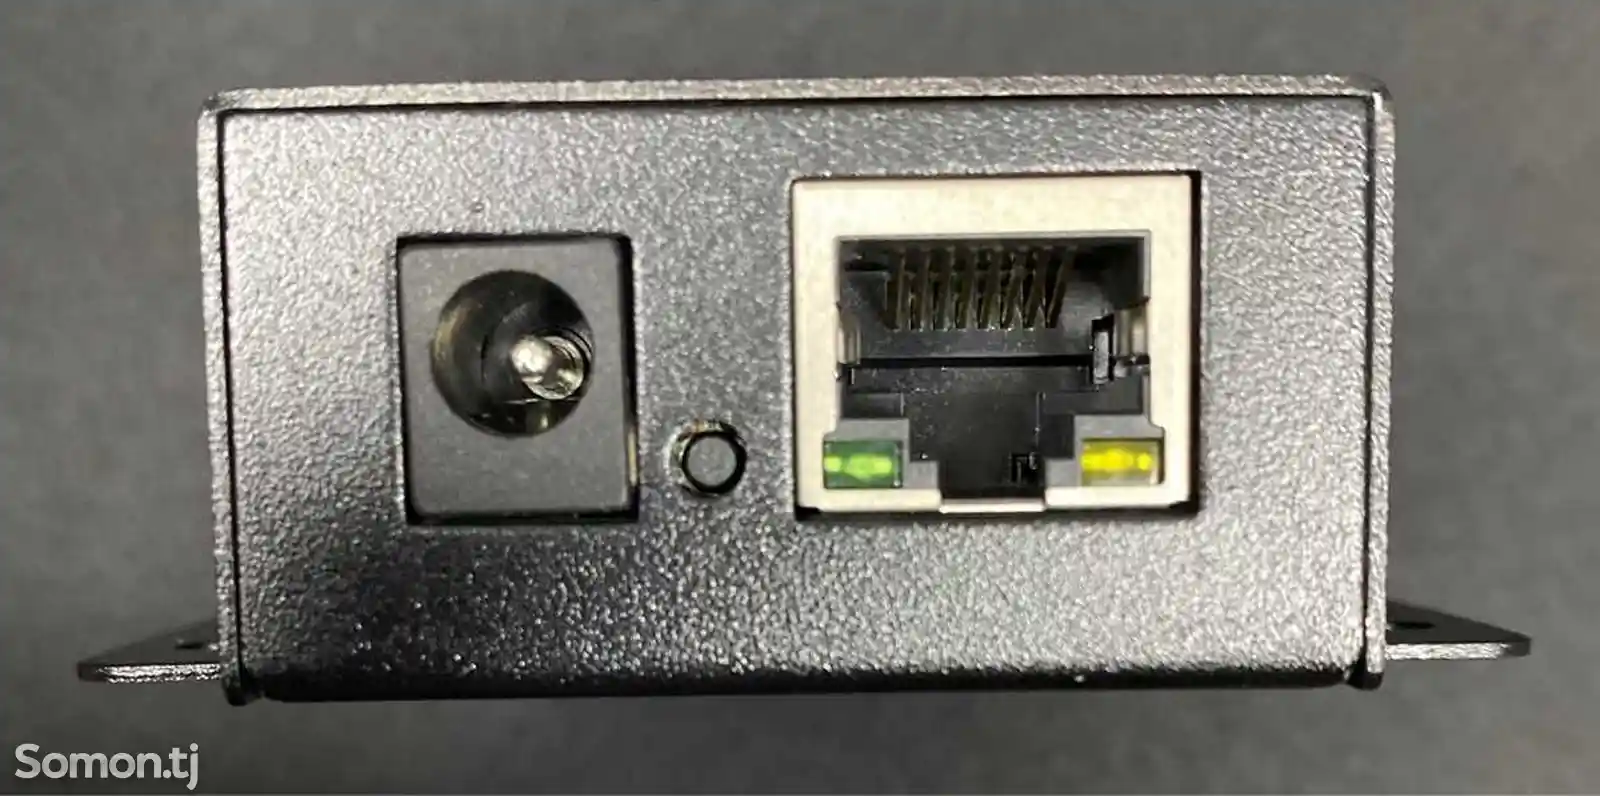 Законченное устройство преобразователя RS485 Ethernet-3